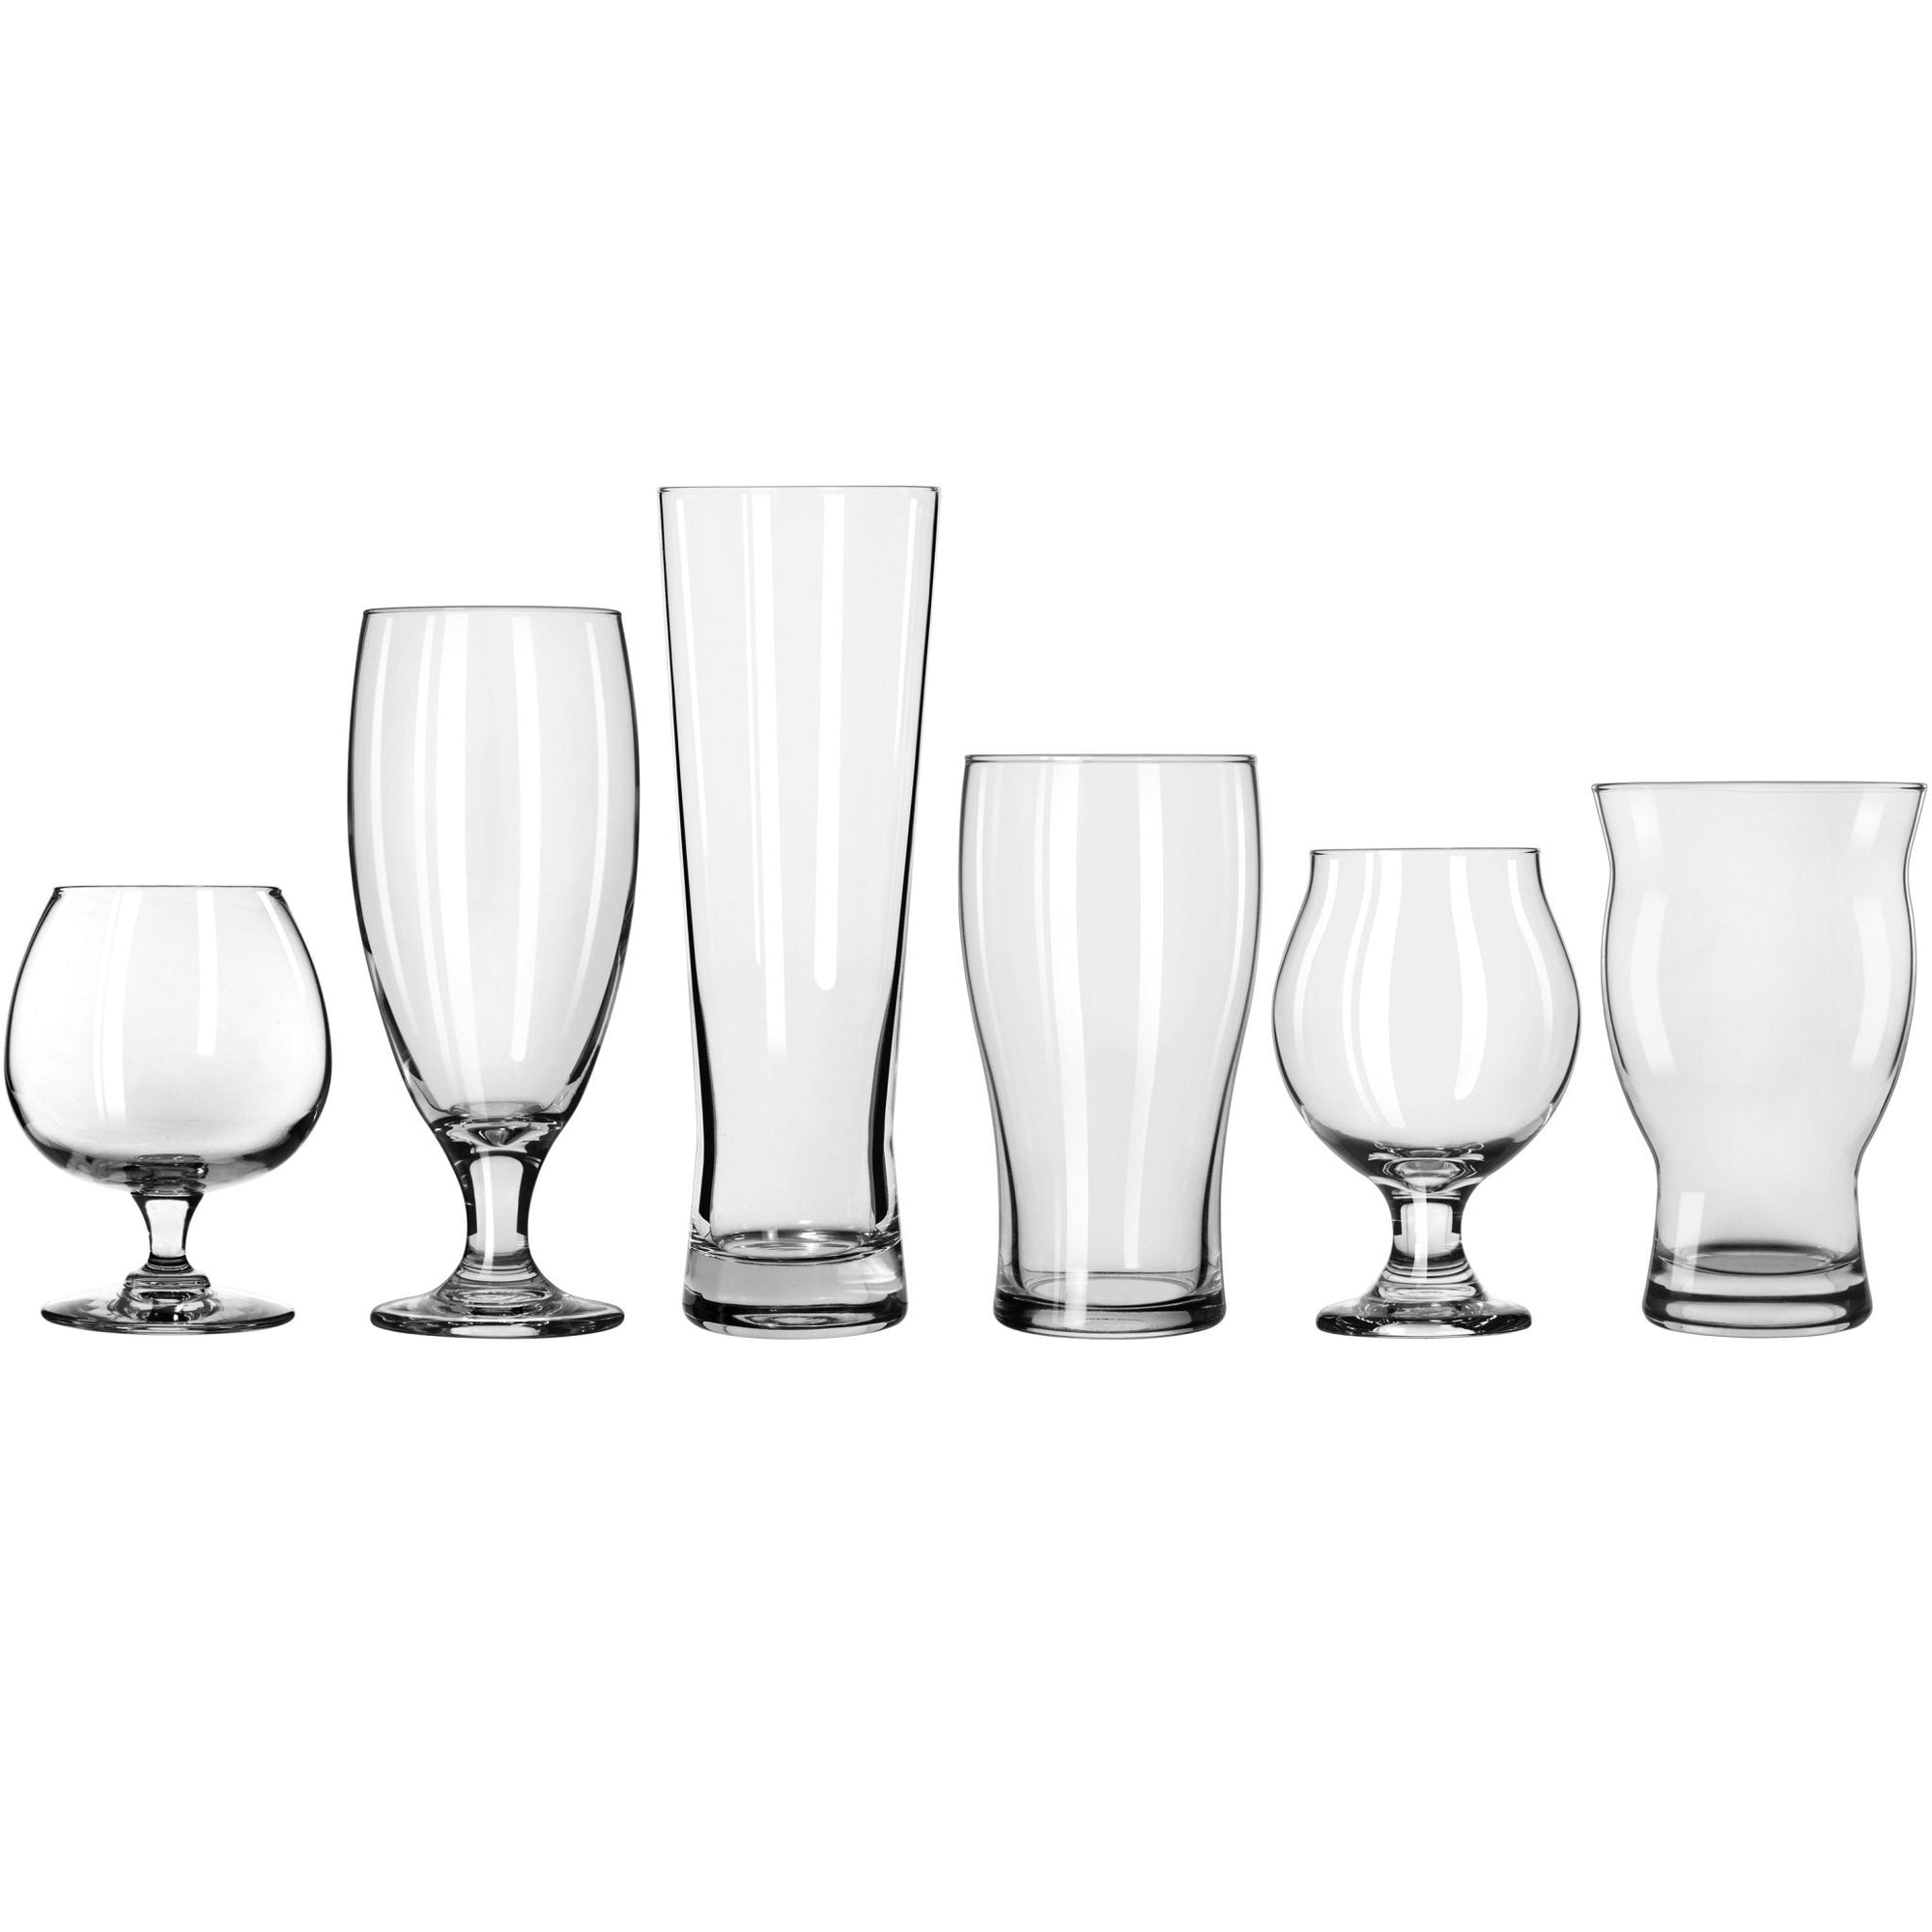 Craft Brews Assorted Beer Glasses, Set of 6